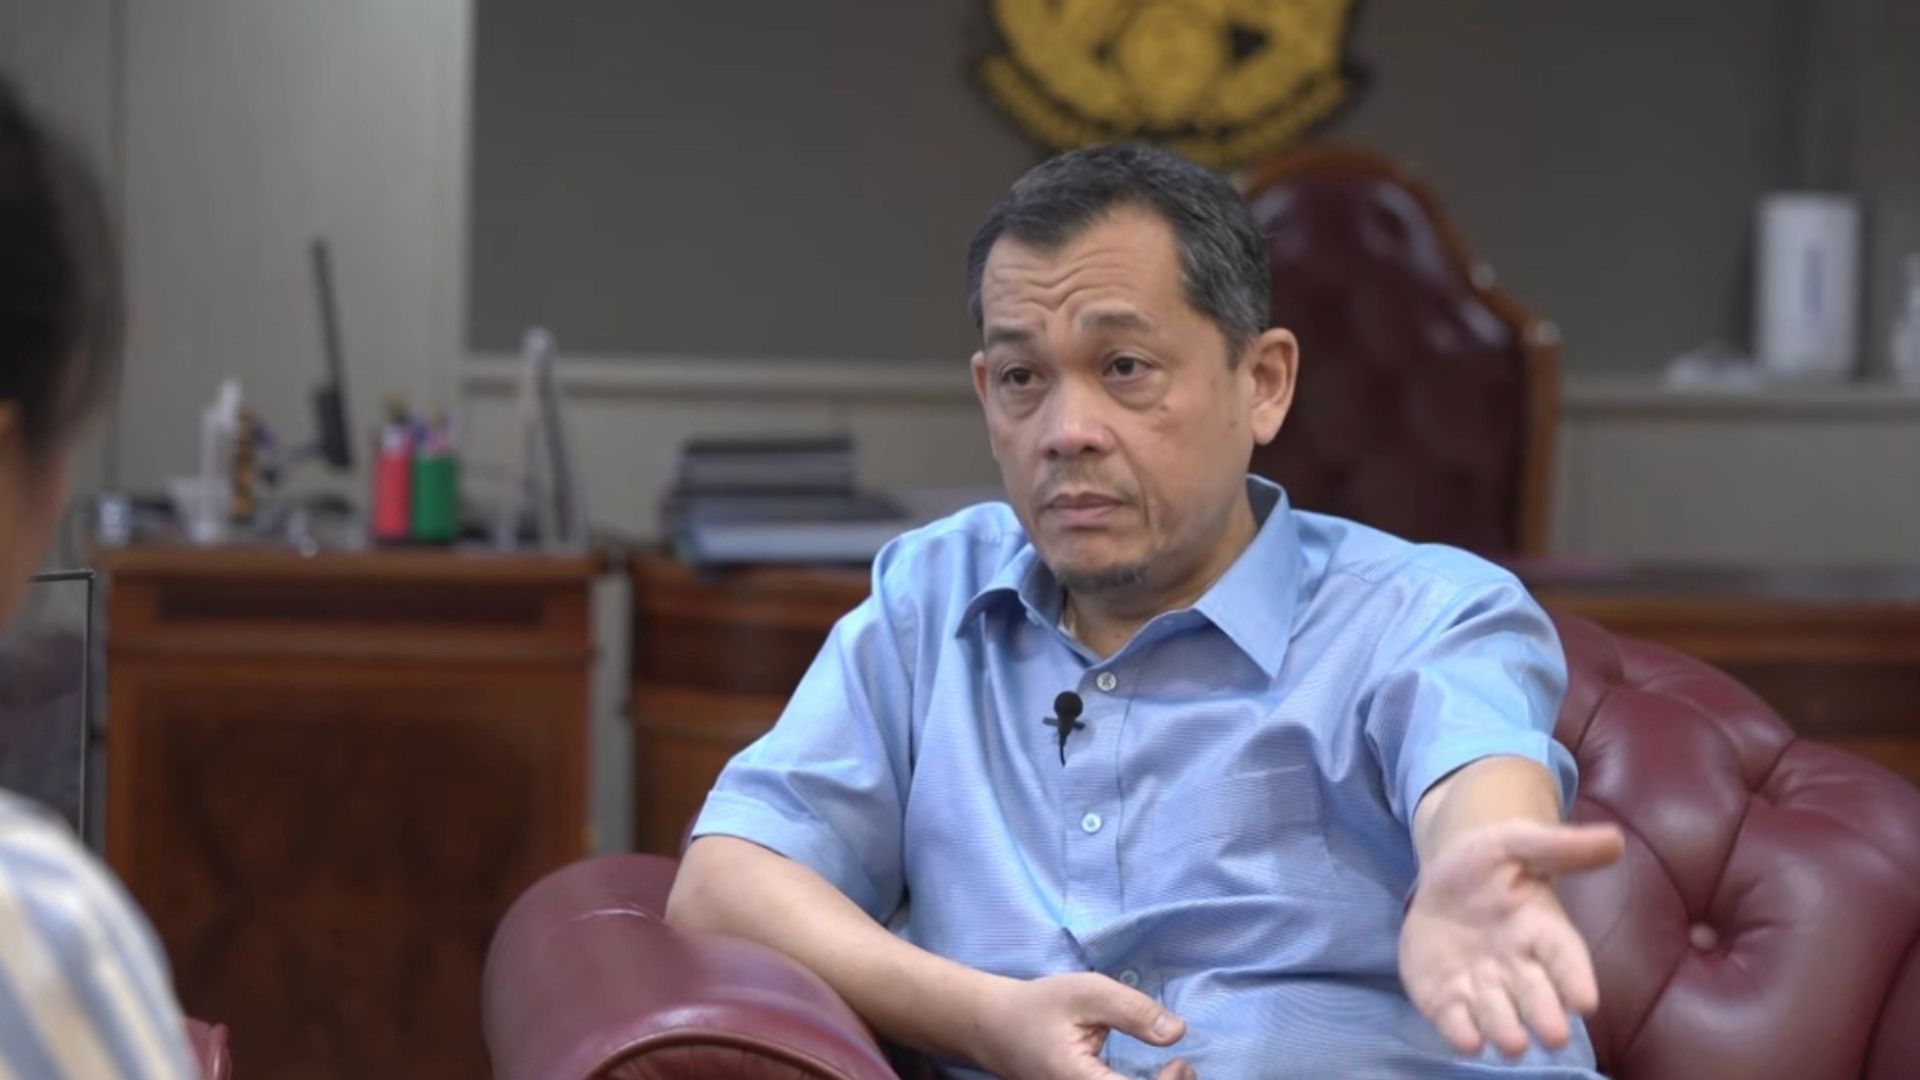 Hamidin youtube Astro Arena Datuk Hamidin Kesal Dengan Dakwaan Adam Adli